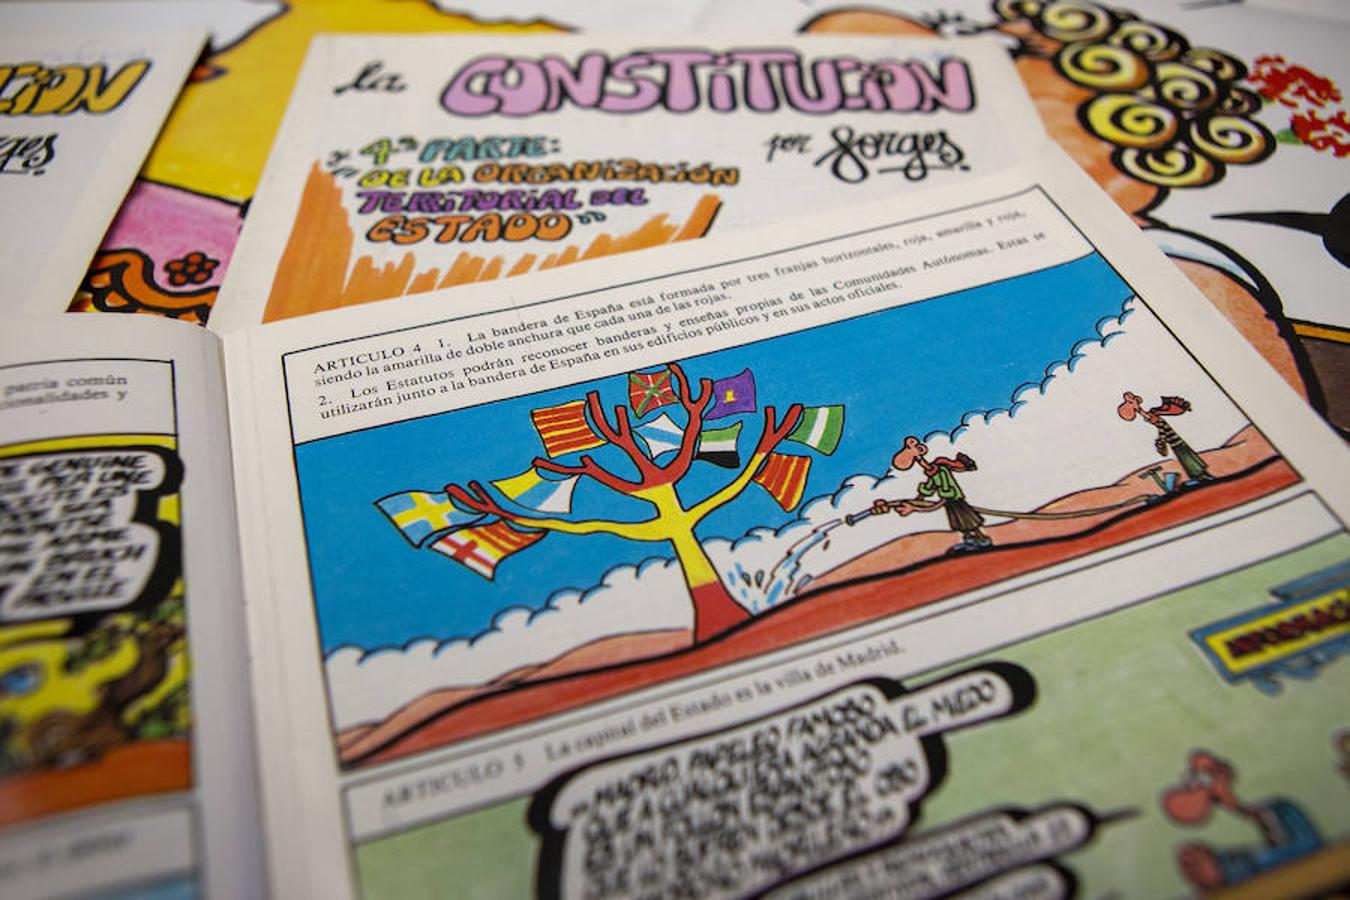 La versión de Forges de la Constitución española de 1978